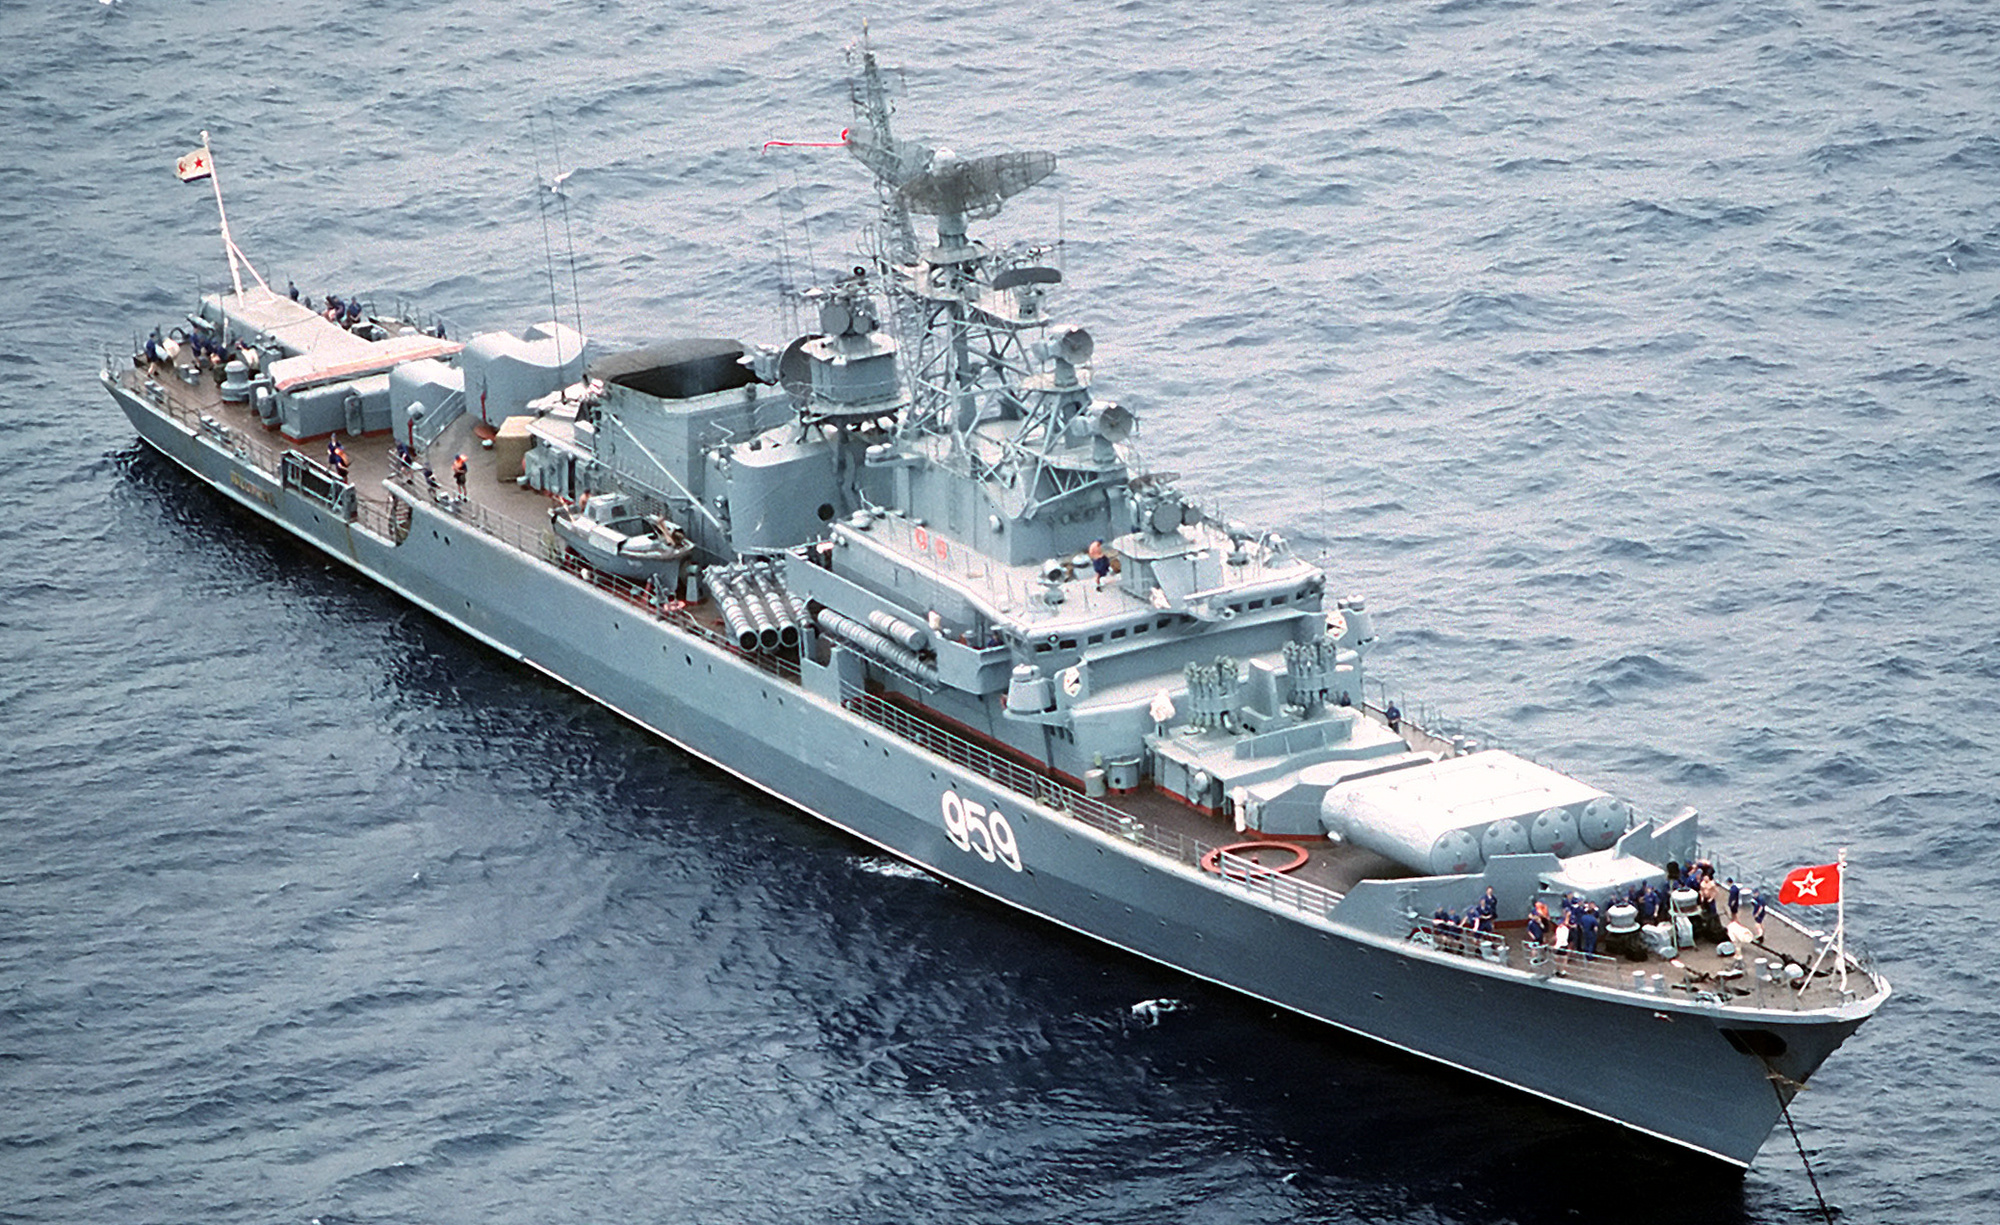 1135型護衛艦